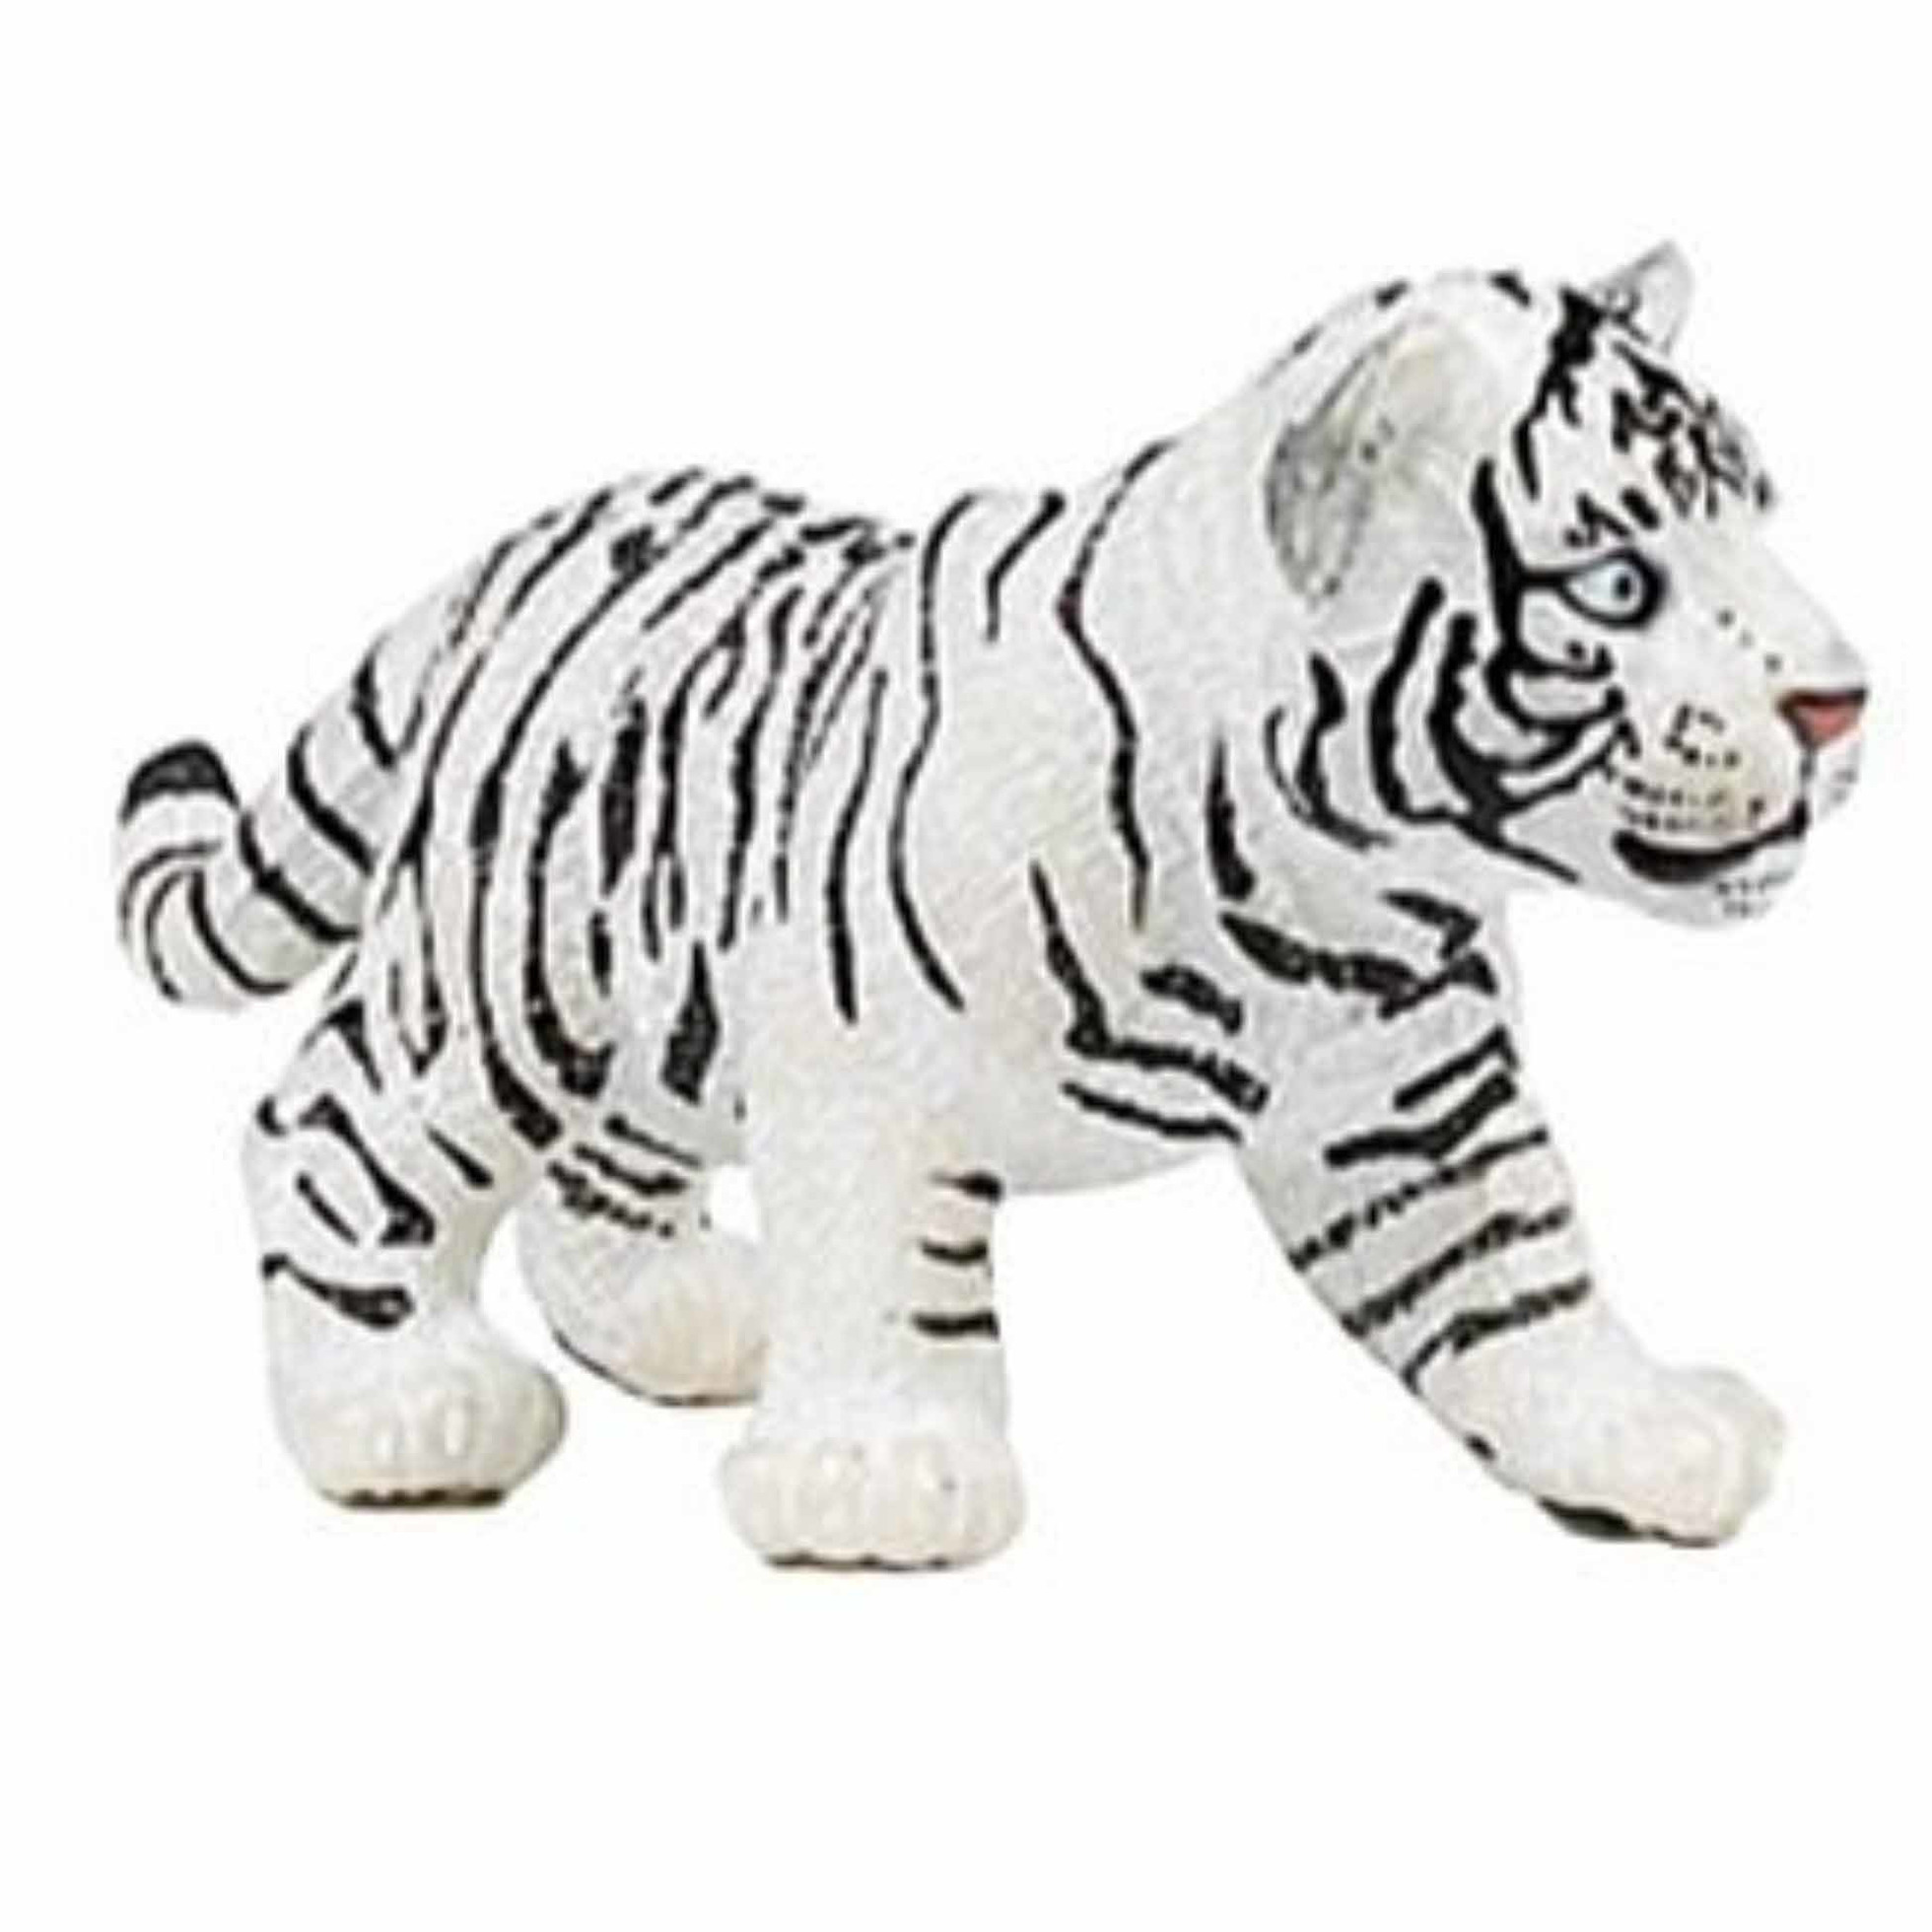 Plastic speelgoed dieren figuur witte tijger welpje 7 cm